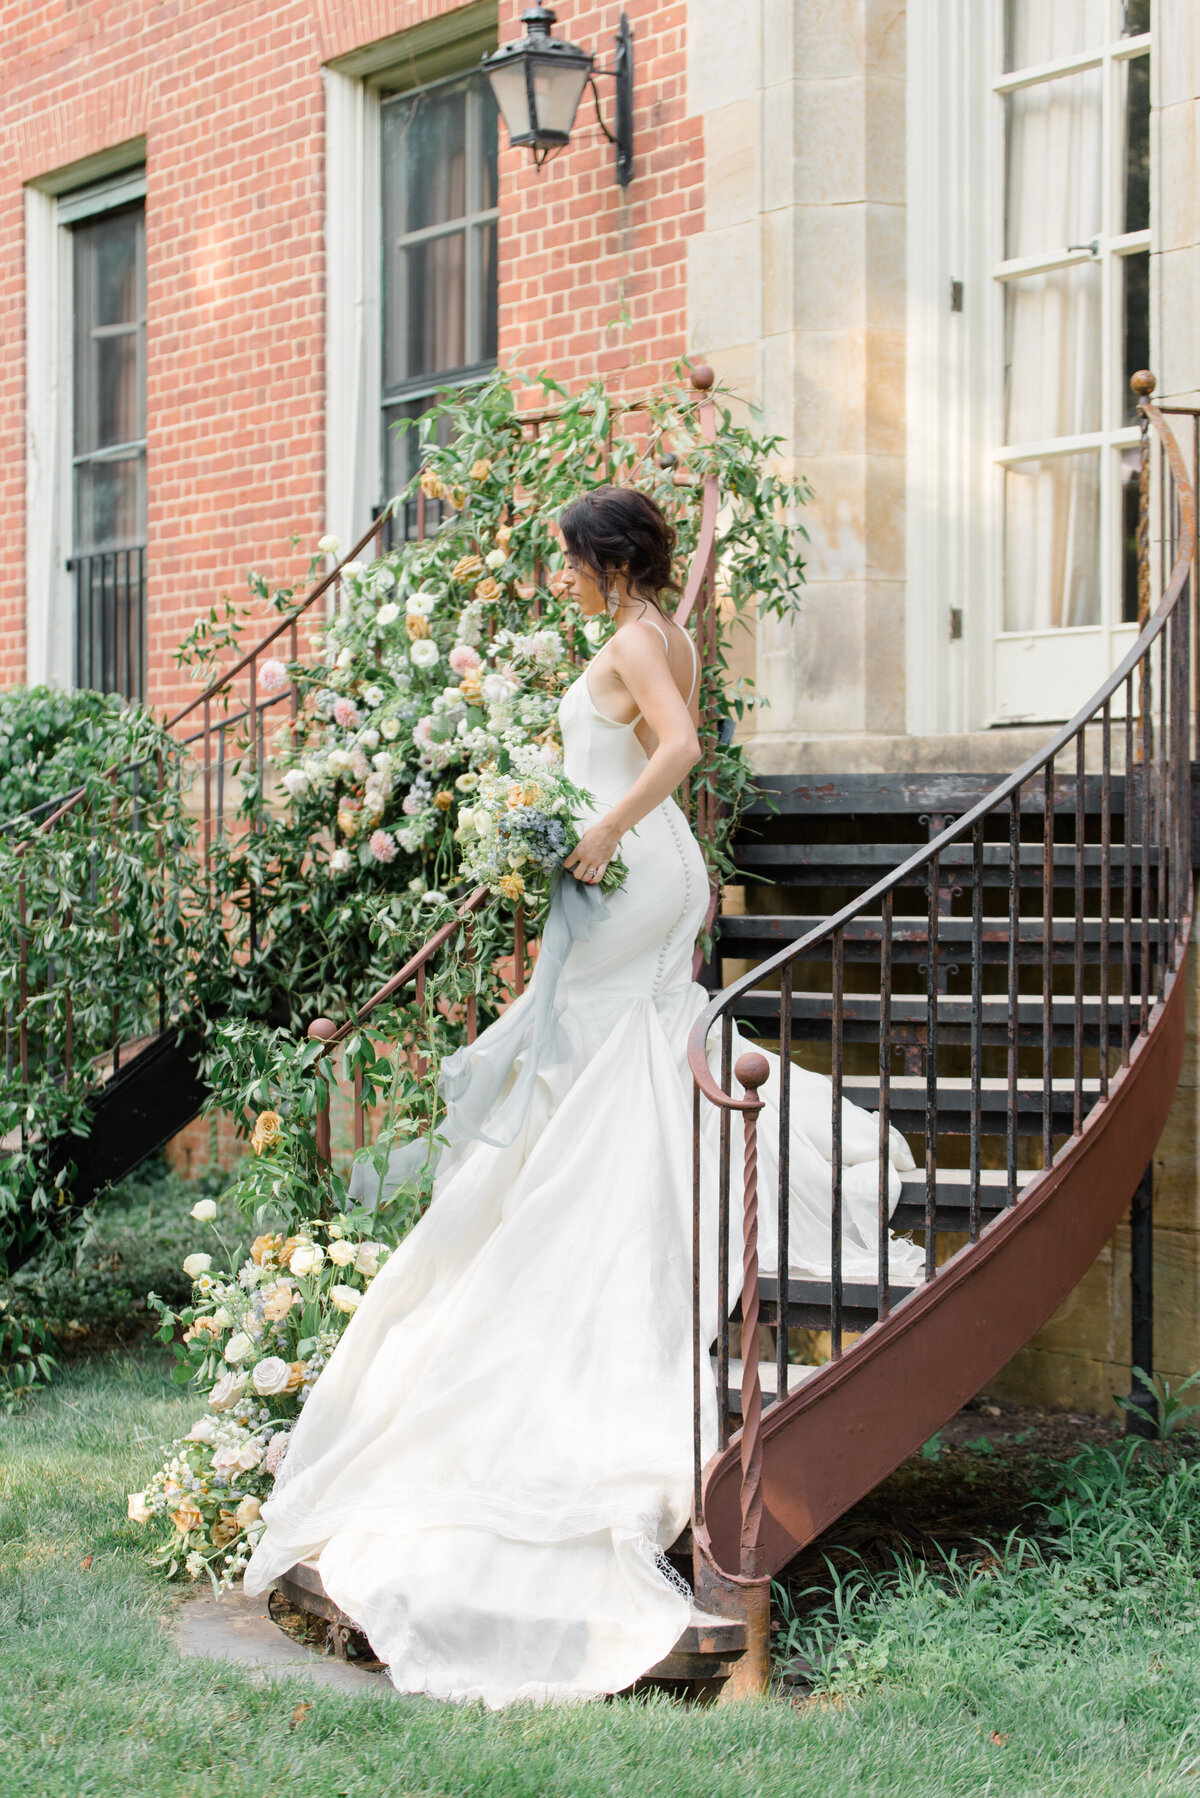 Peterloon Estate Wedding Venue Anastasia Gentry Photography Cincinnati Ohio (1 of 1)-4